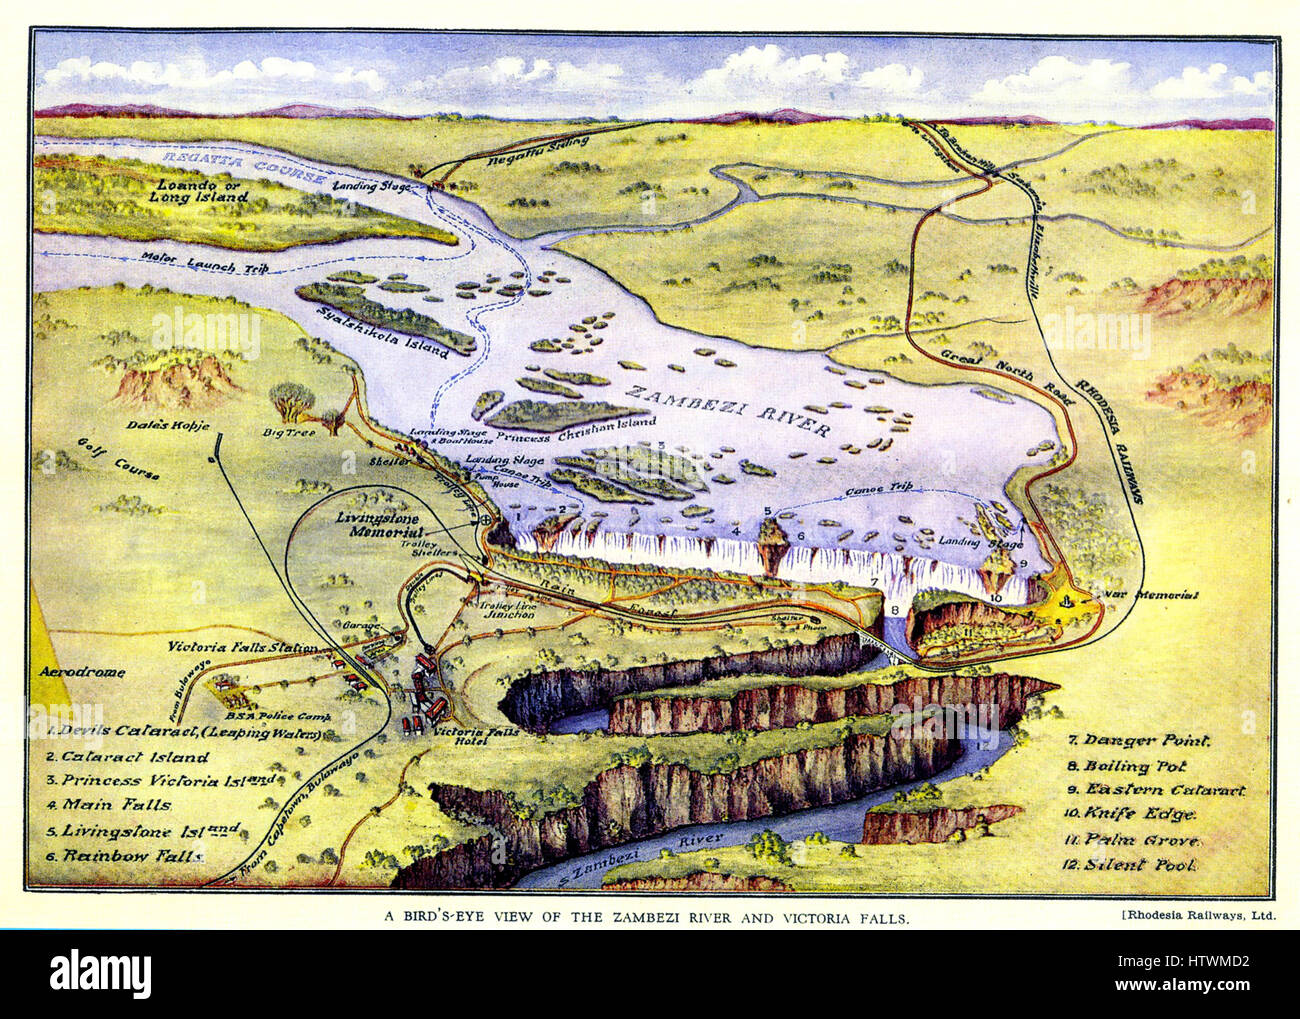 La Rhodésie chemins affiche concernant 1897. Remarque les différentes régates, les excursions sur la rivière et le golf appelée attractions touristiques Banque D'Images